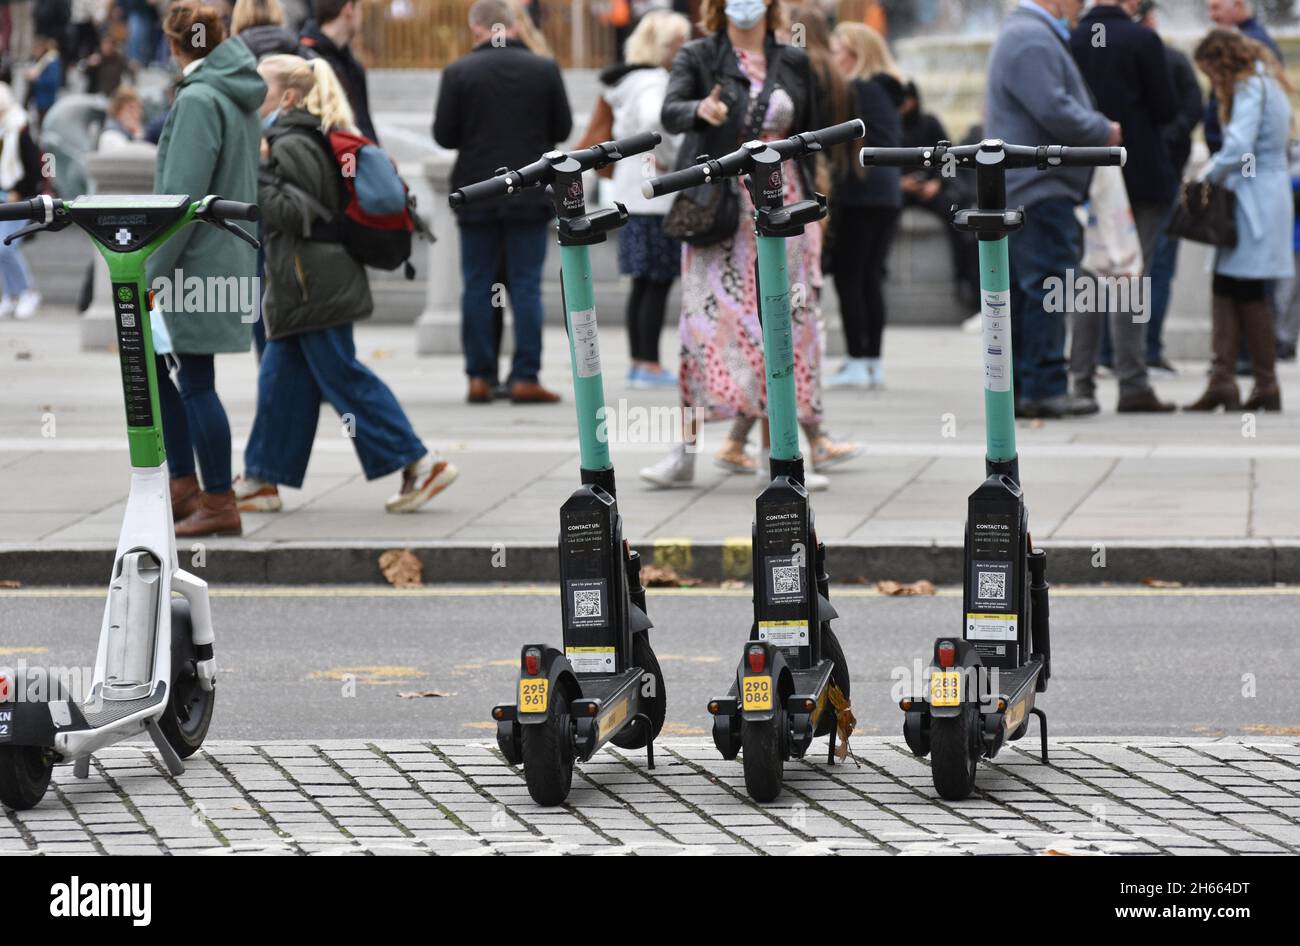 E scooter / scooter elettrici a noleggio nel quartiere di Westminster a Londra nel Regno Unito mentre la città continua il suo e scooter noleggio prova Foto Stock